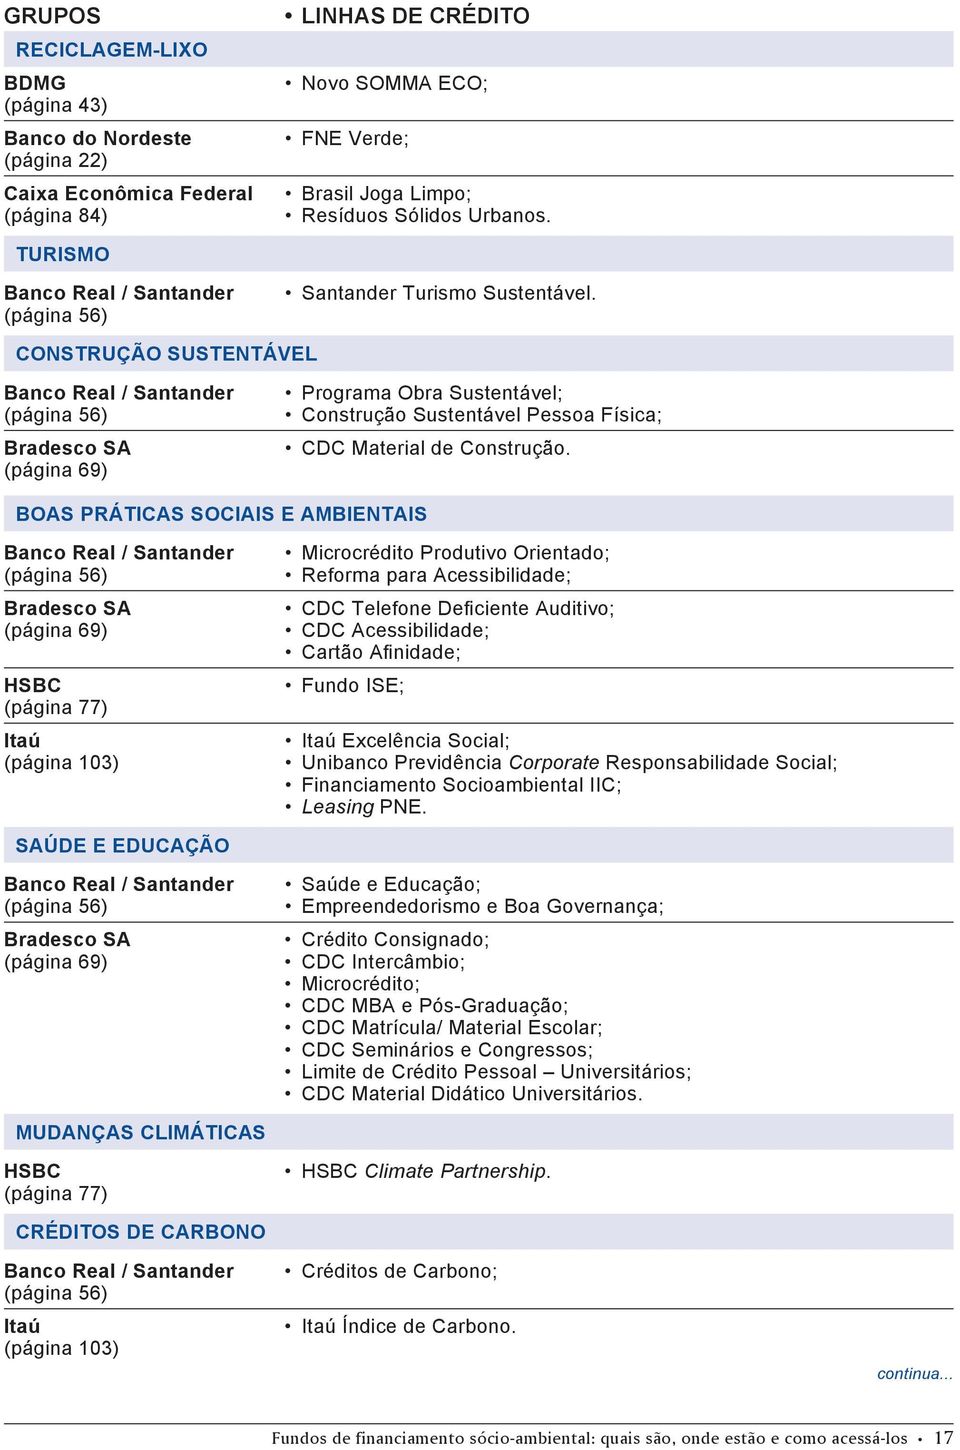 Construção Sustentável Banco Real / Santander (página 56) Bradesco SA (página 69) Programa Obra Sustentável; Construção Sustentável Pessoa Física; CDC Material de Construção.